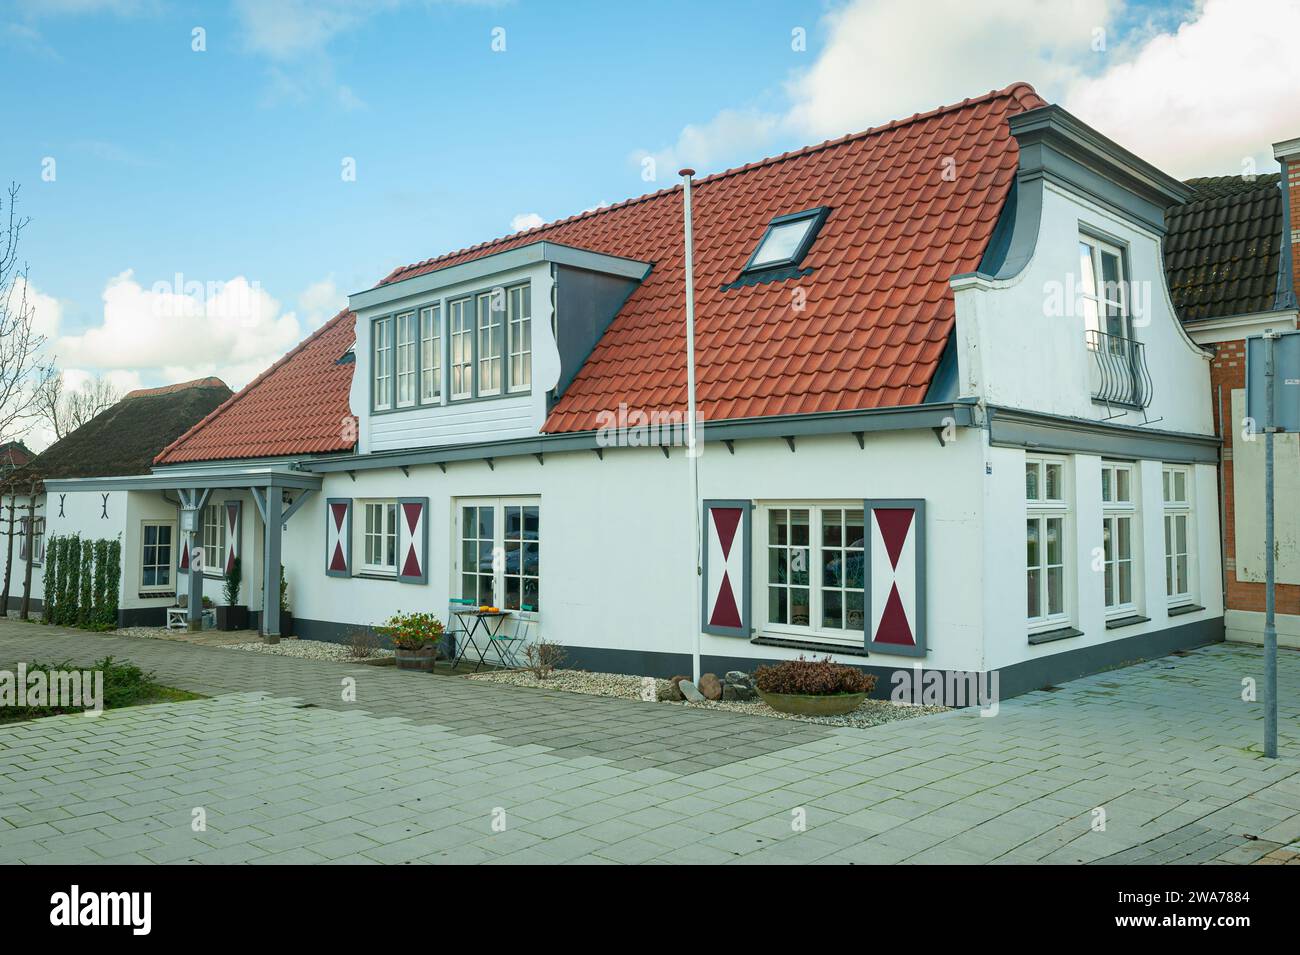 Casa tradizionale olandese con persiane decorative rosse e bianche nella città di Waddinxveen, Paesi Bassi. Foto Stock